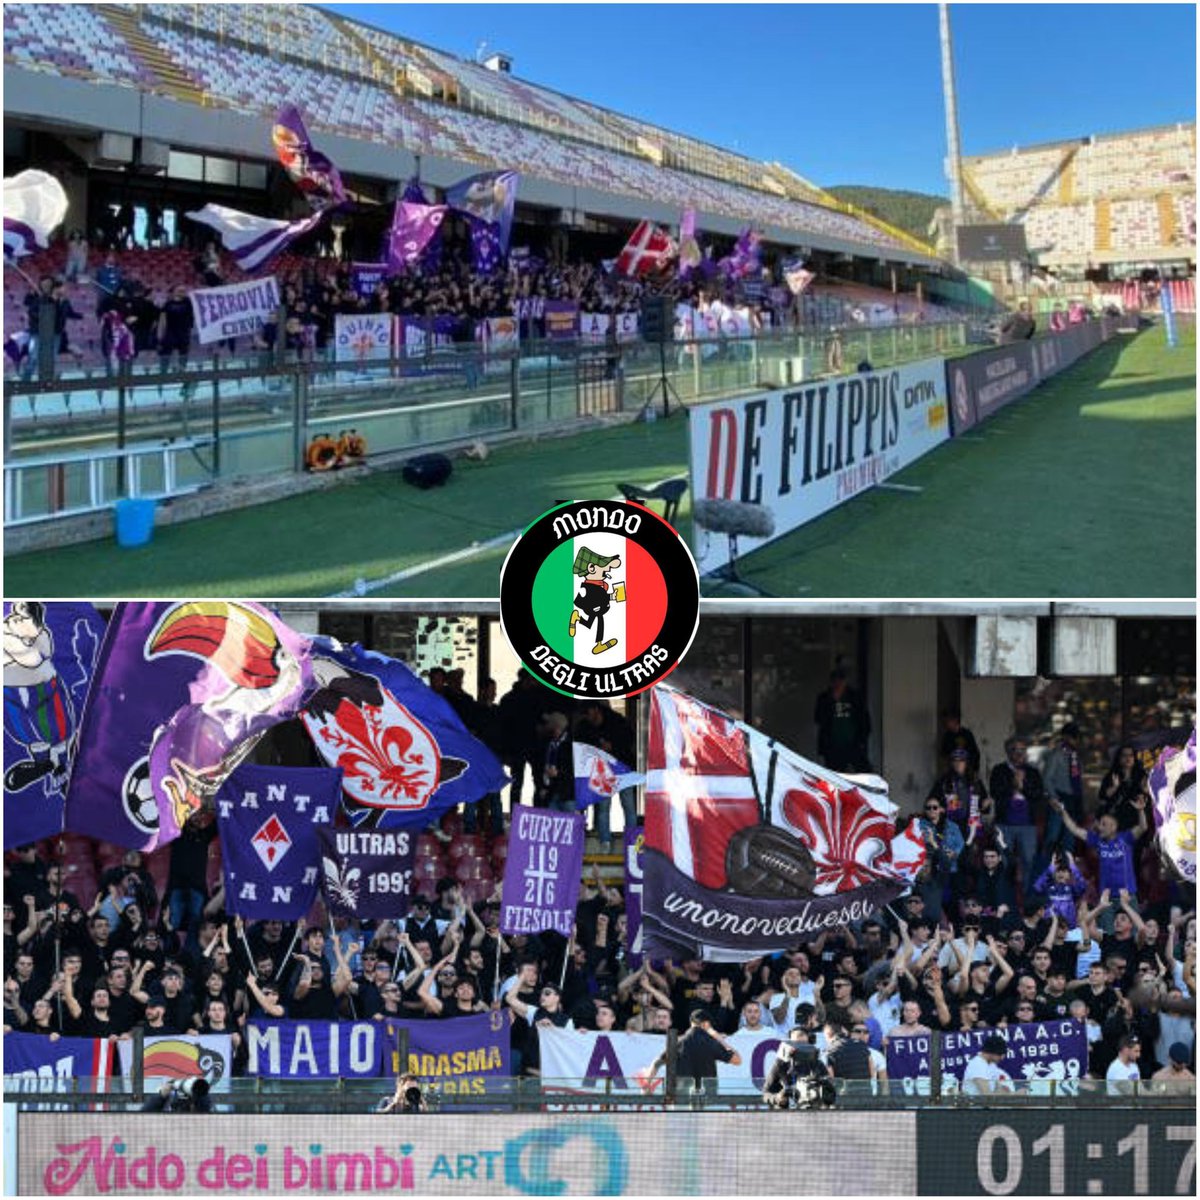 Salernitana vs FIORENTINA 21/04/24🇮🇹 #salernitanafiorentina 
📸@mondo_degli_ultras #ultras